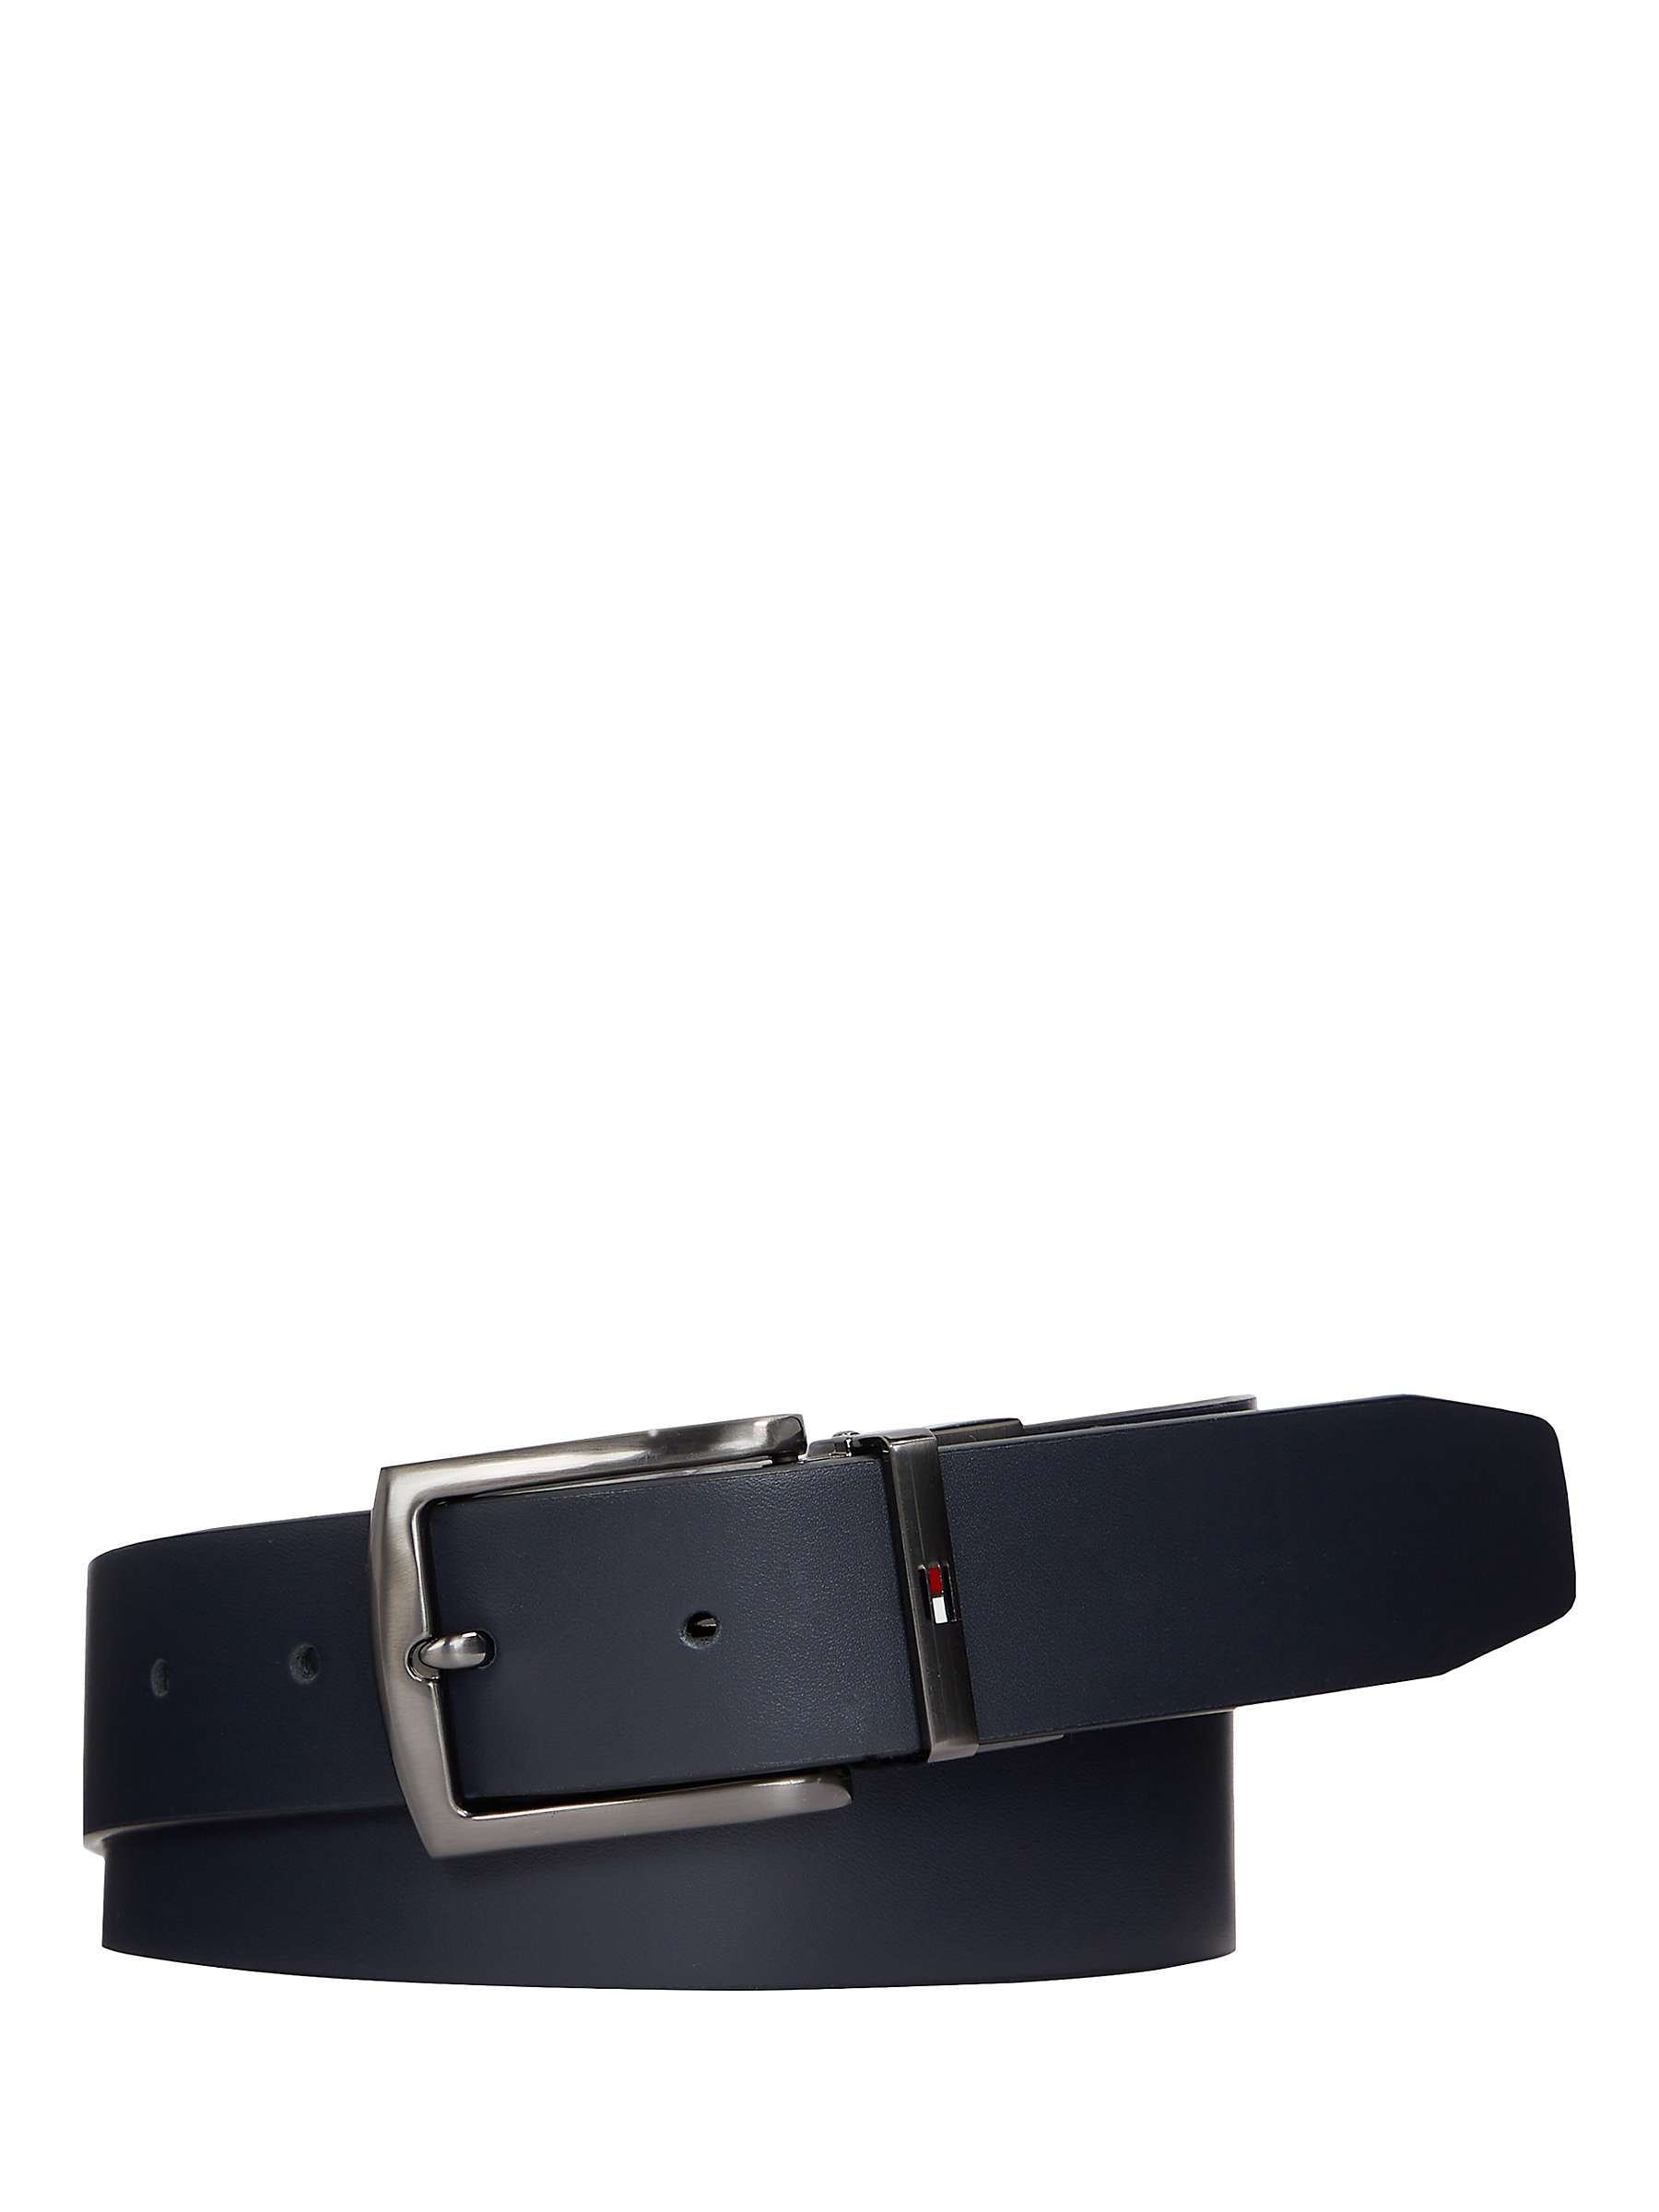 Buy Tommy Hilfiger Denton 3.5 Belt, Space Blue/Corporate Online at johnlewis.com